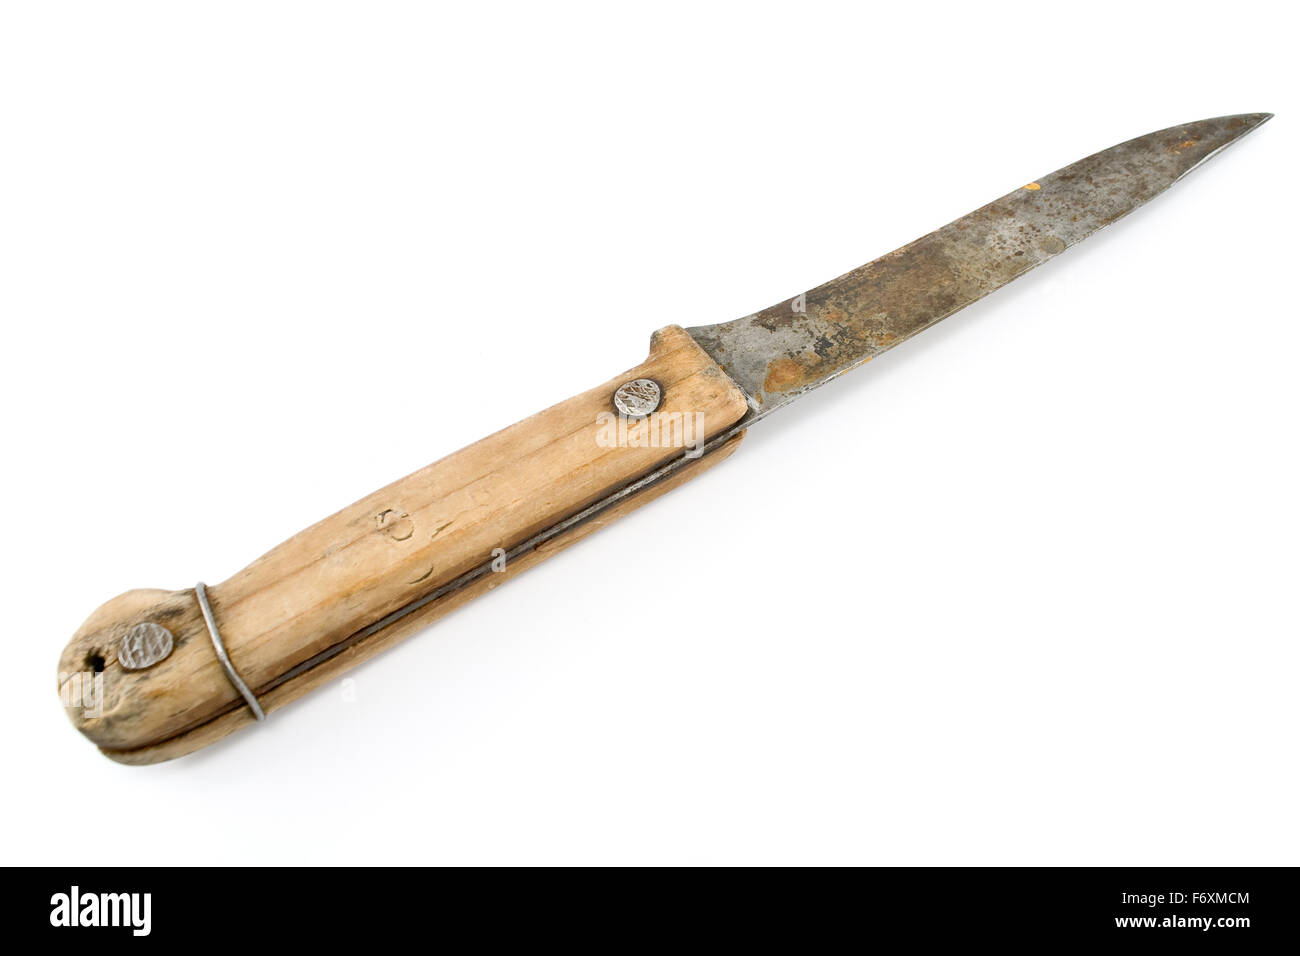 Alte rostige Messer mit Holzgriff, isoliert auf weiss Stockfotografie -  Alamy